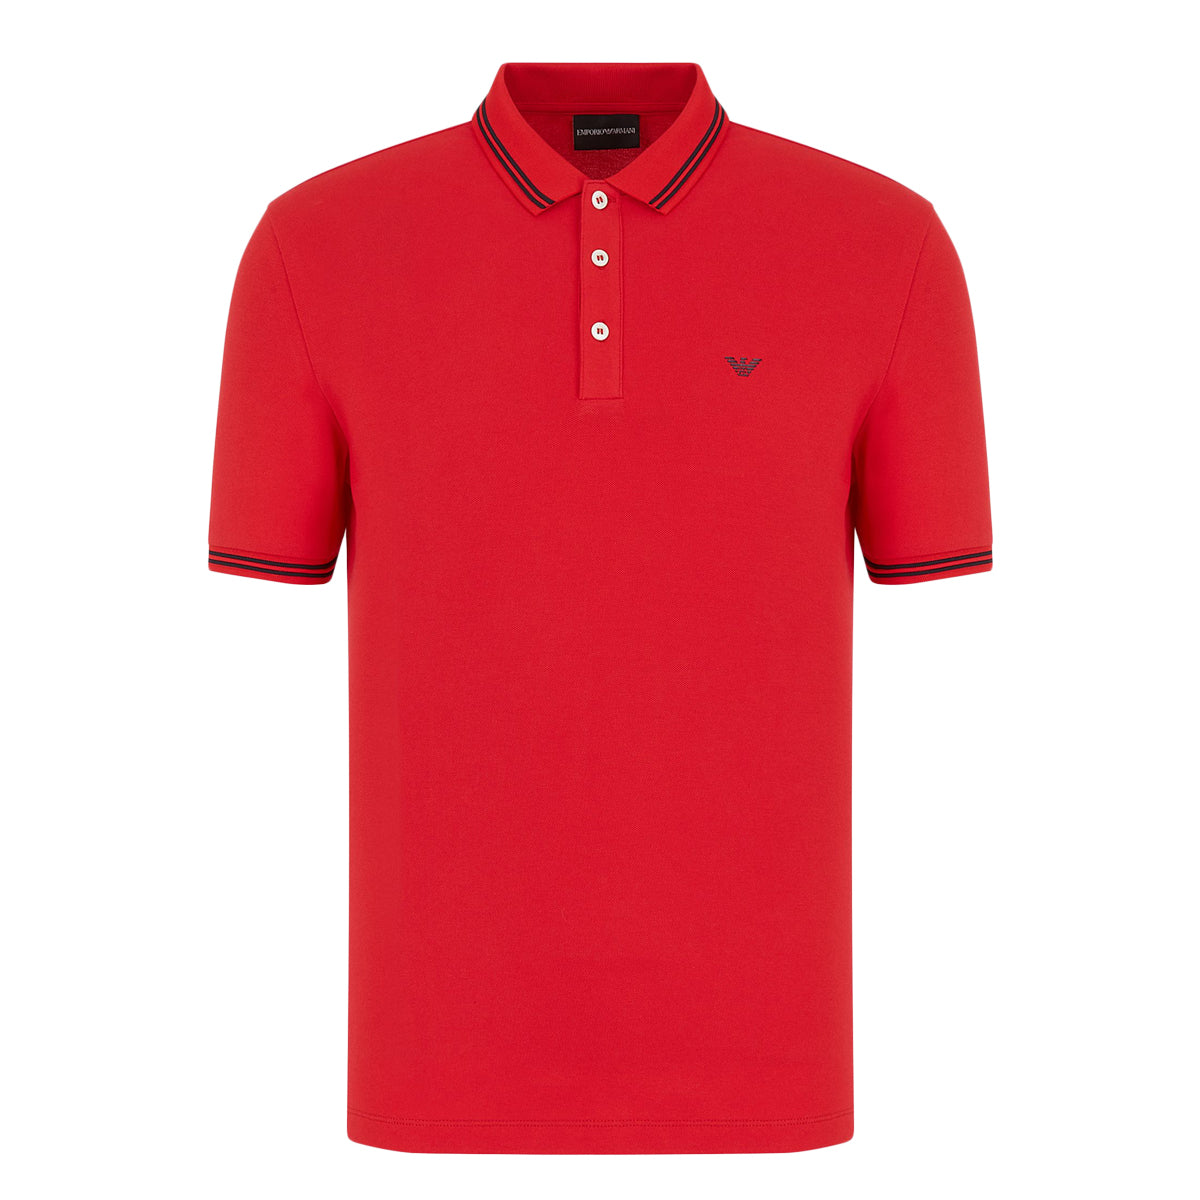 Emporio Armani Polo shirt - becco d oca/red - Zalando.de